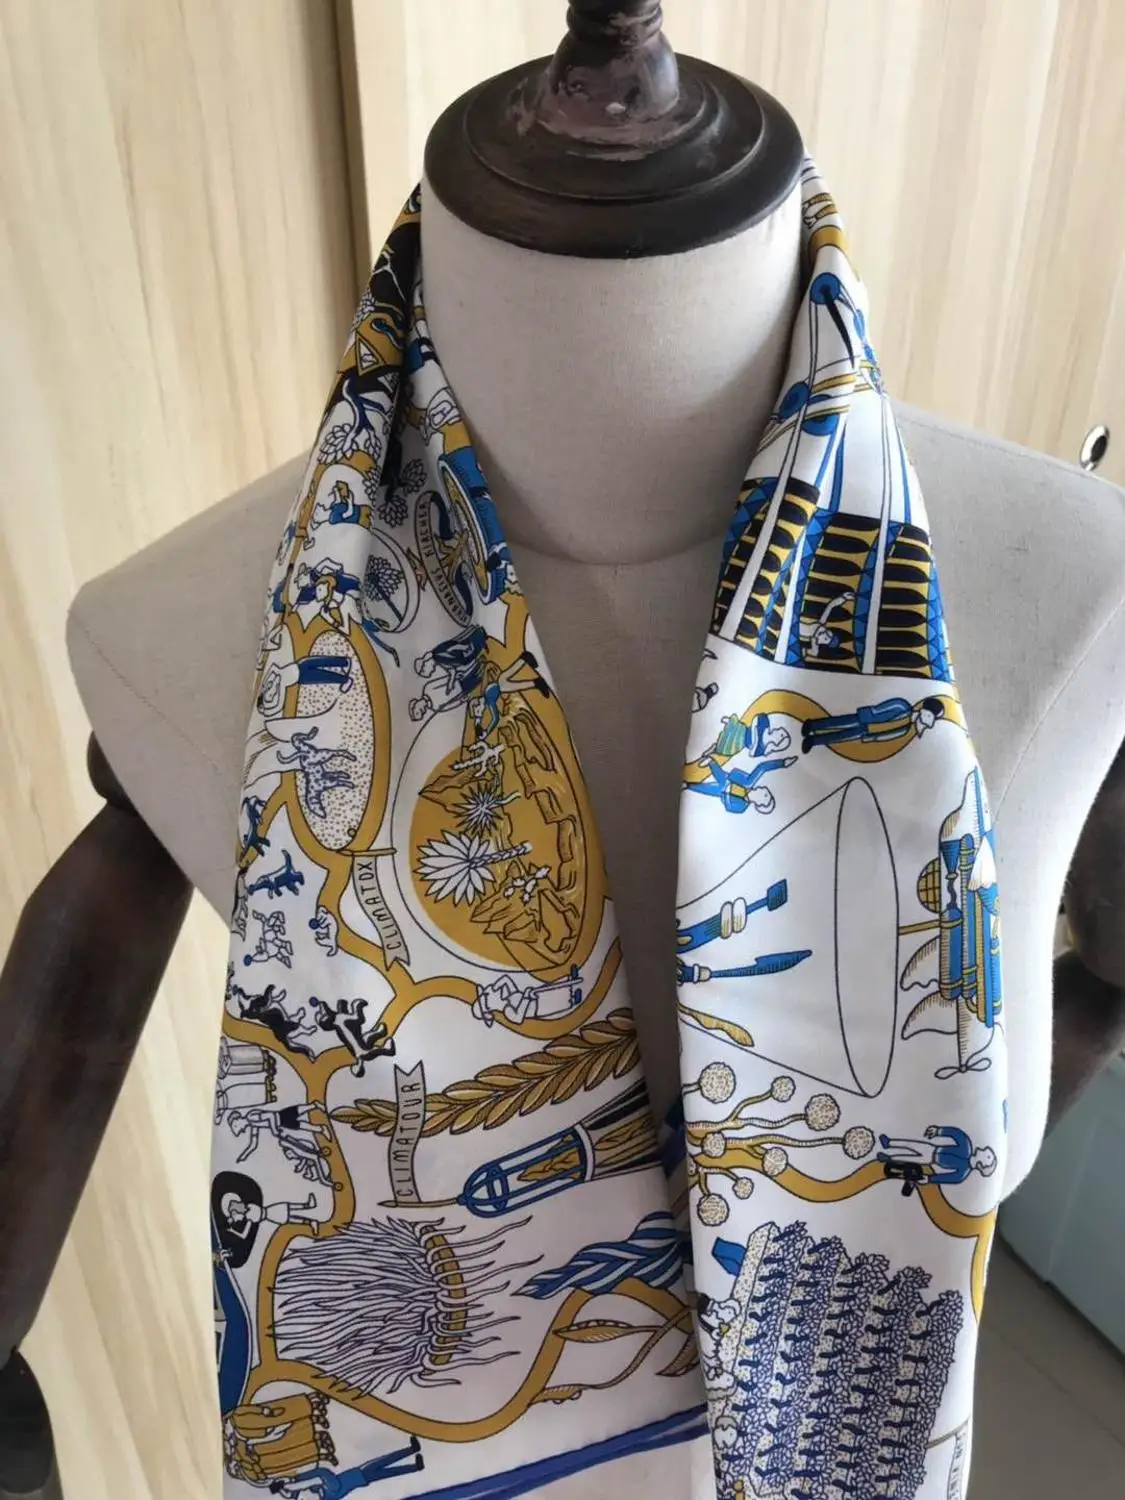 

2020 Новое поступление осенний модный элегантный классический 100% шелковый шарф 90*90 см квадратная шаль саржевая накидка для женщин и девушек П...